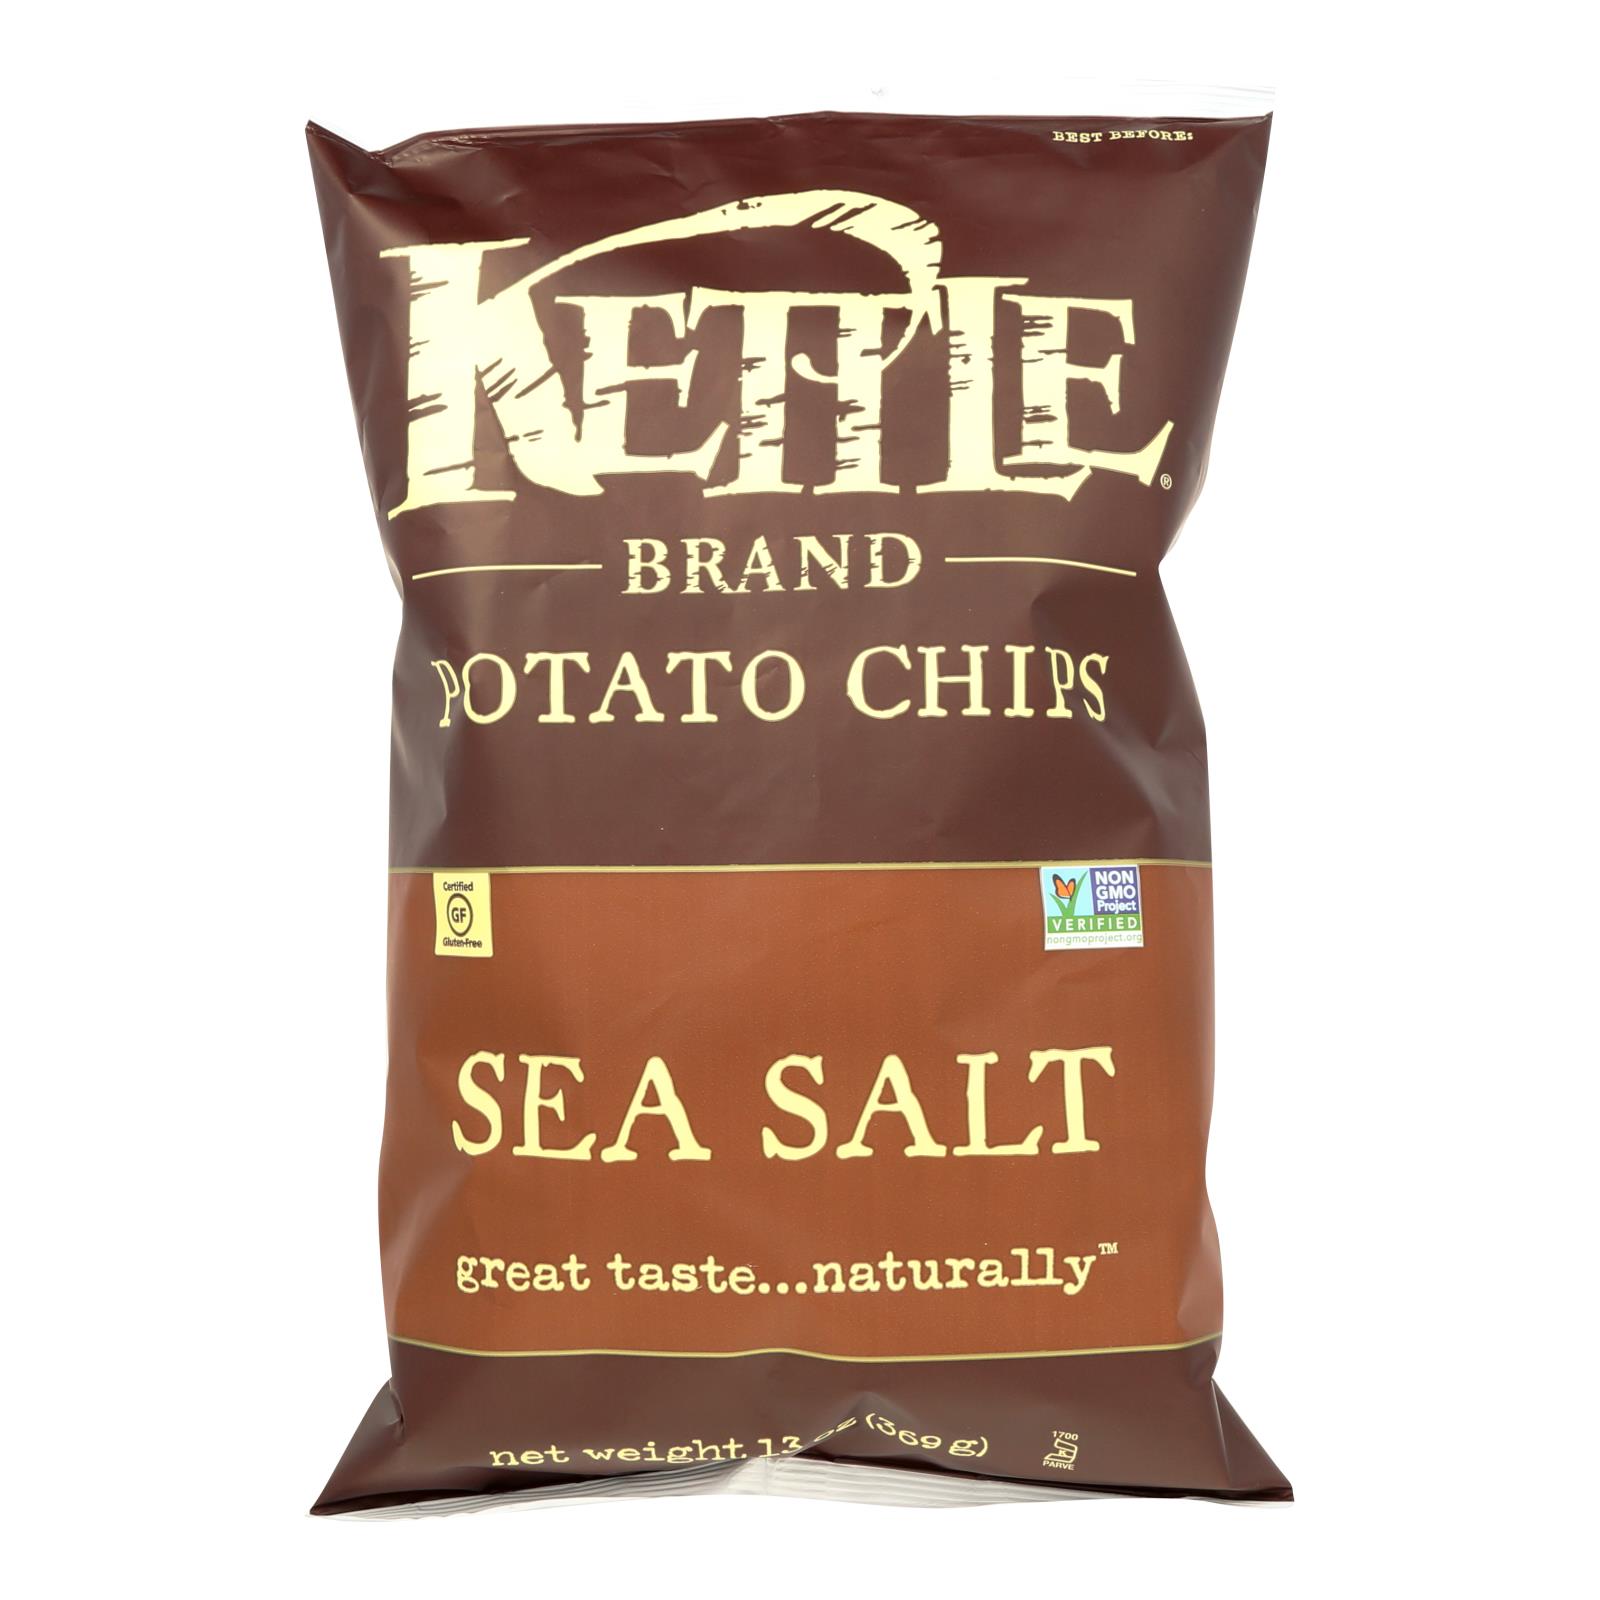 Kettle Potato Chips - 9개 묶음상품 - 13 OZ